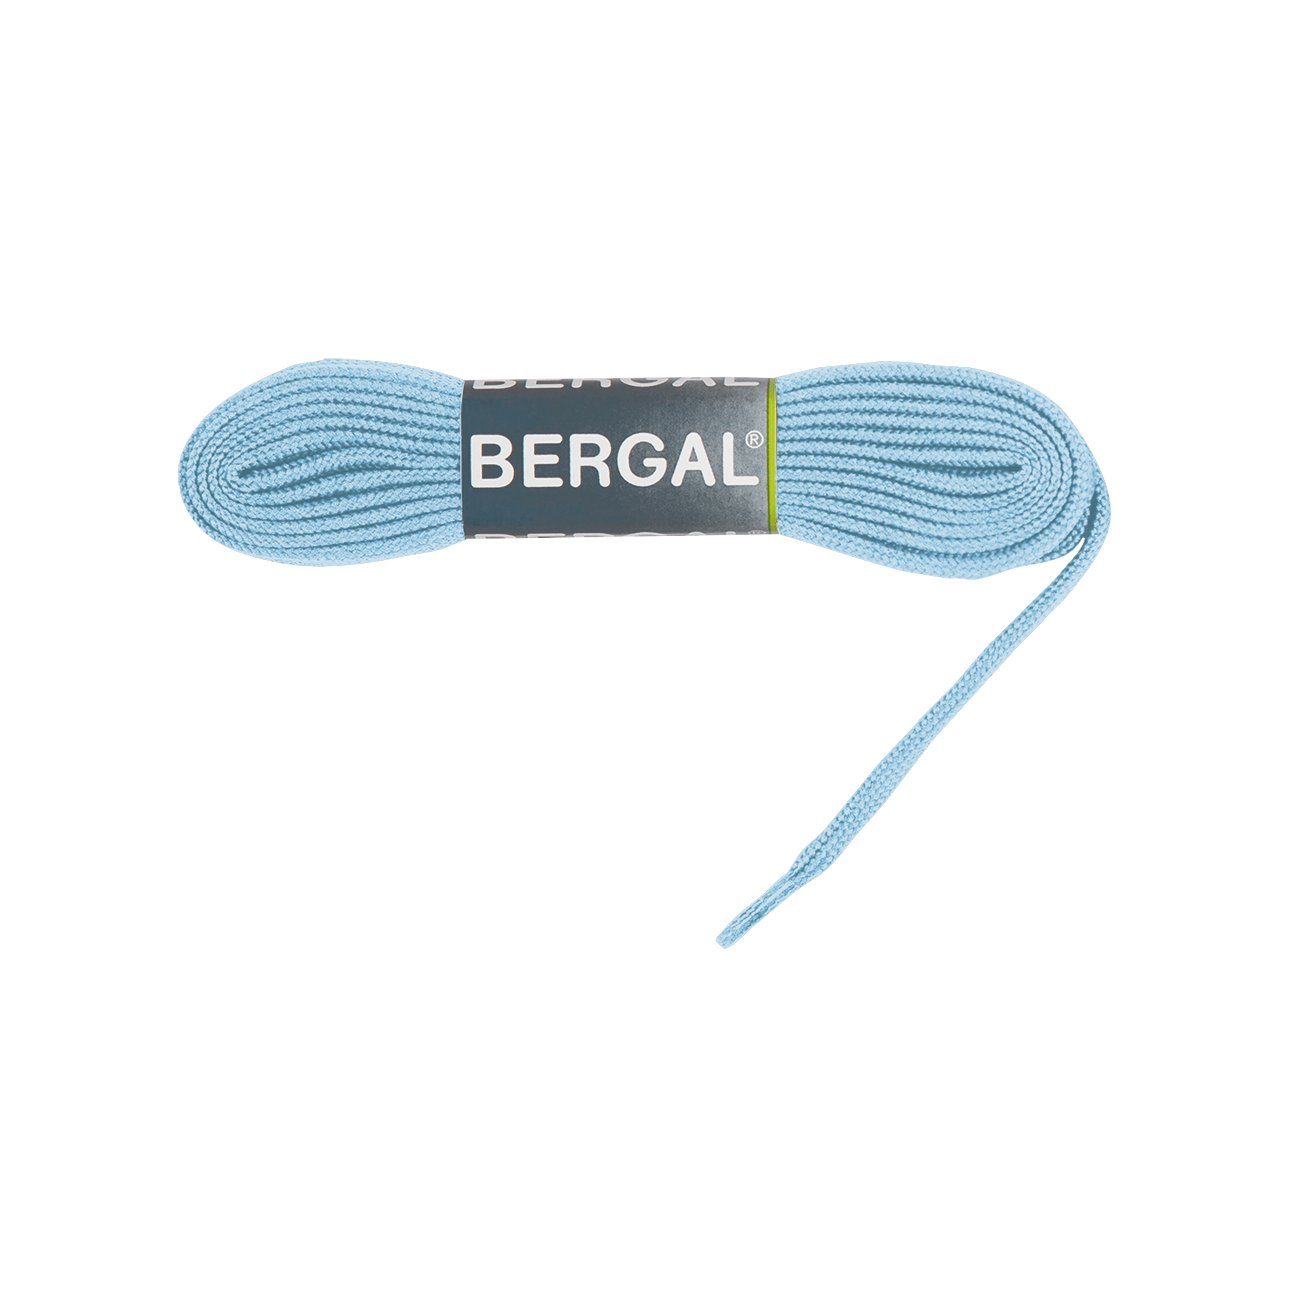 Bergal Schnürsenkel Sneaker Laces - Flach - 10 mm Breit Hellblau | Schnürsenkel